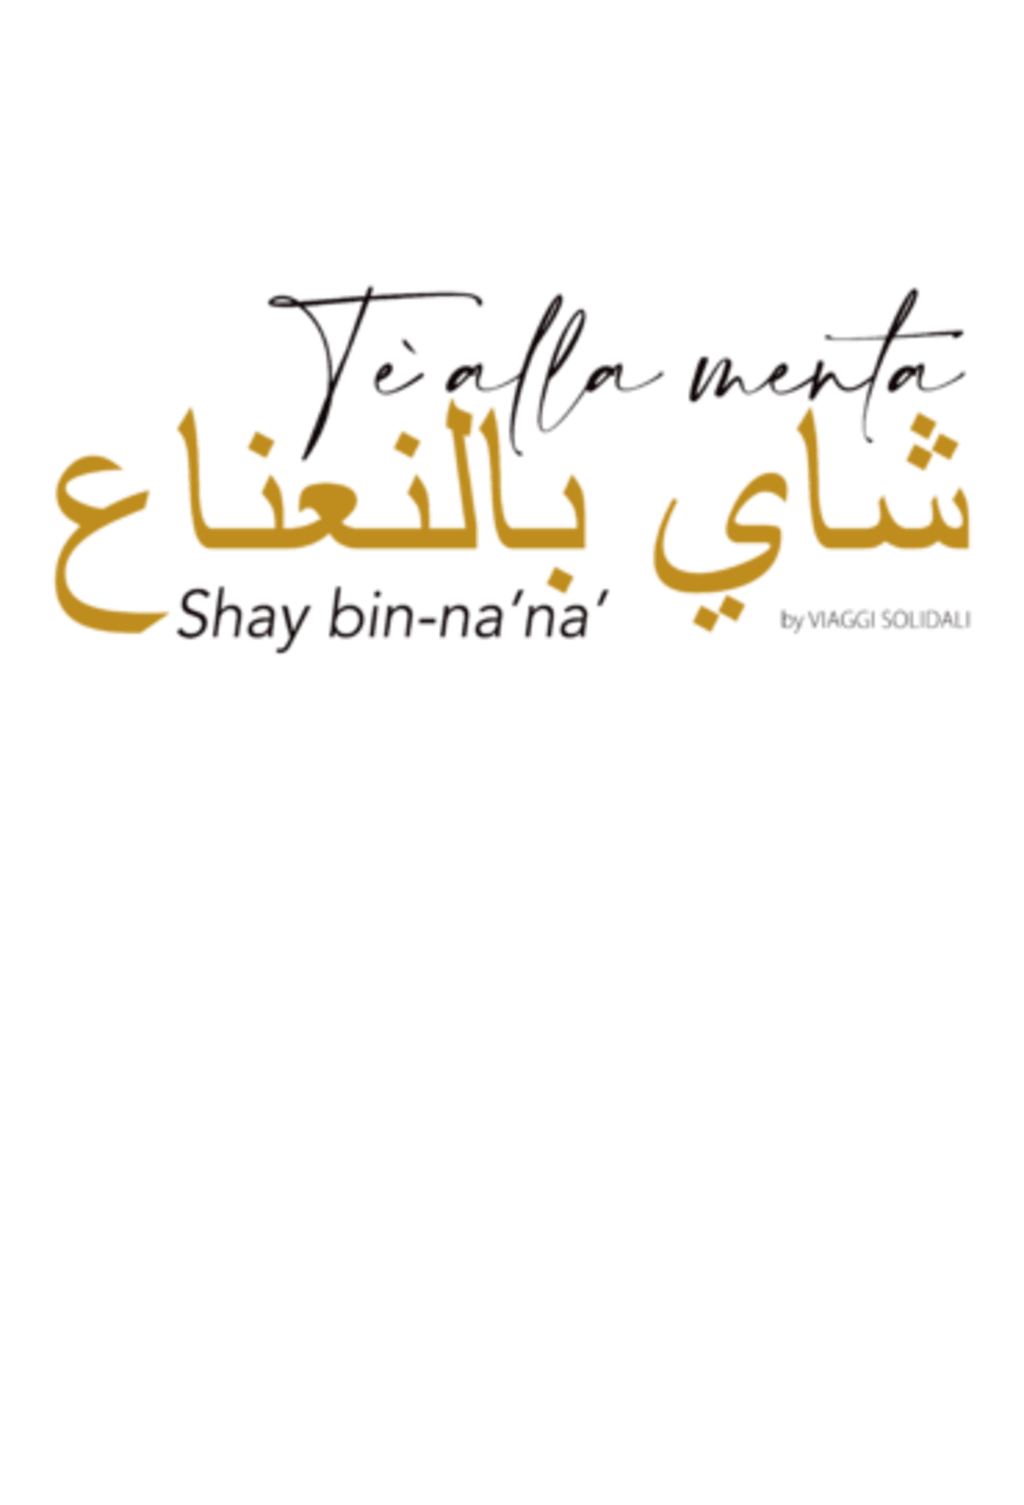 Shay bin - nana